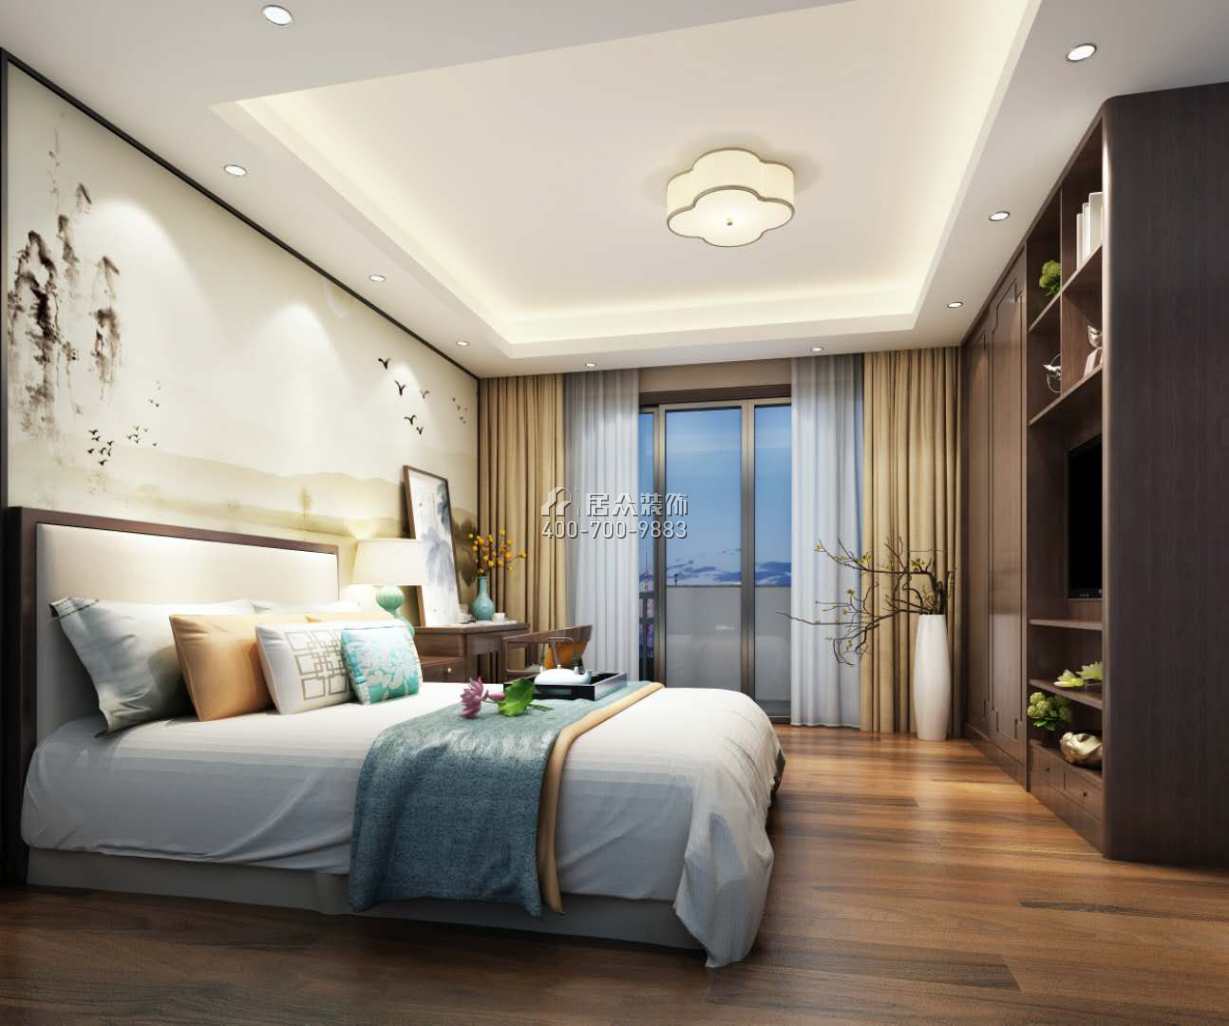 海逸豪庭尚都280平方米中式风格别墅户型卧室装修效果图